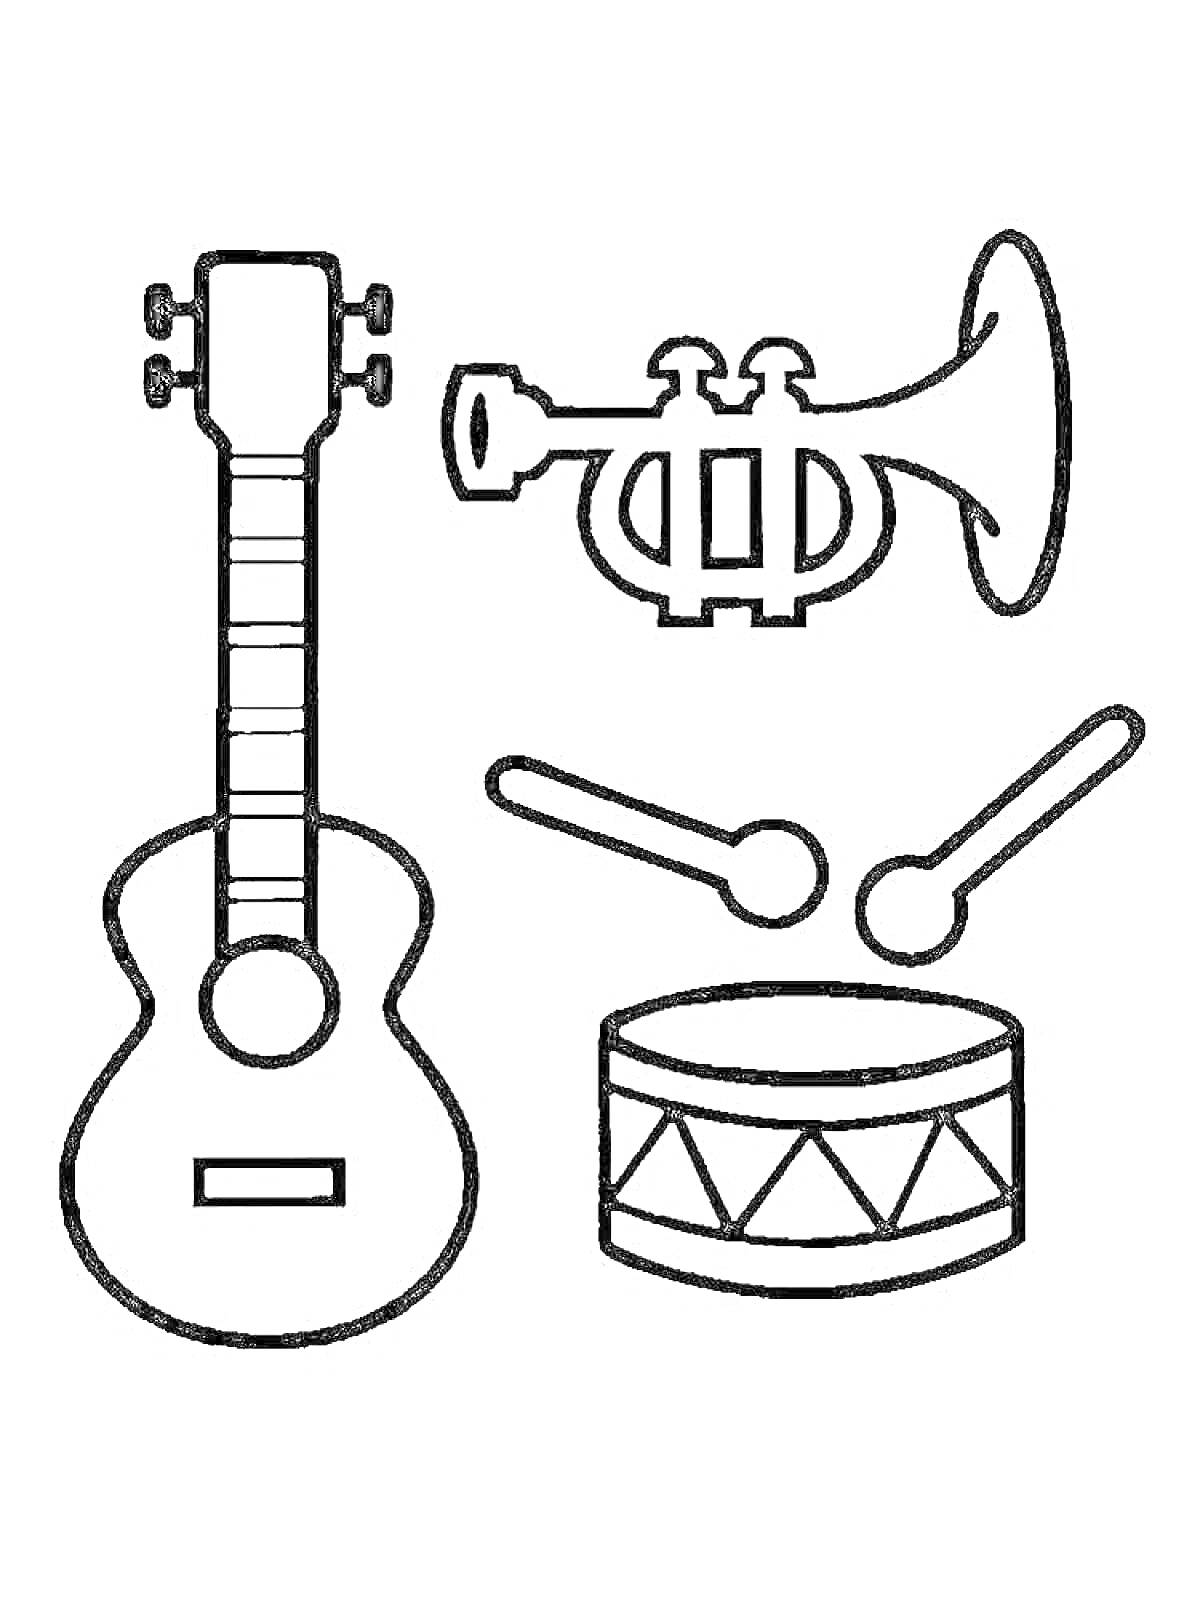 музыкальные инструменты - гитара, труба, барабан с палочками